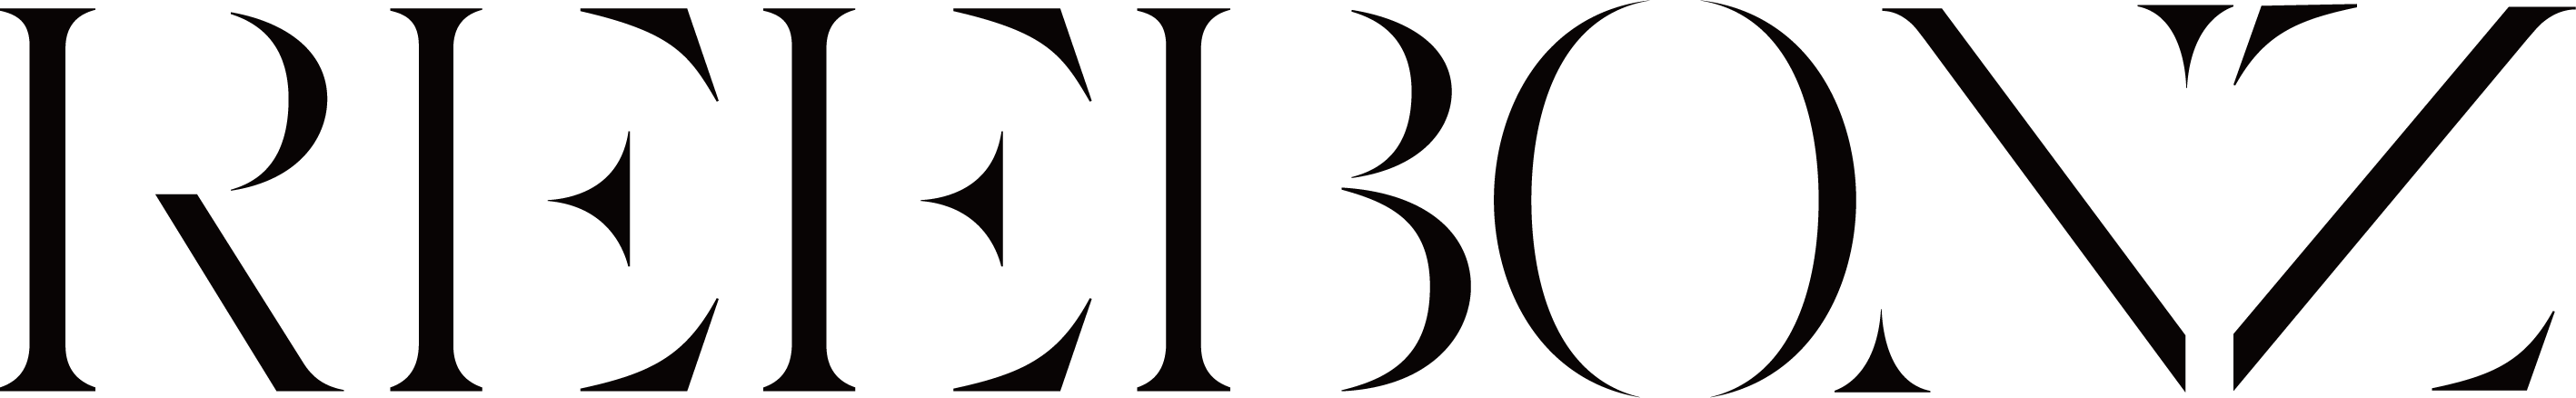 아이에스이네트워크의 계열사 (주)리본즈의 로고